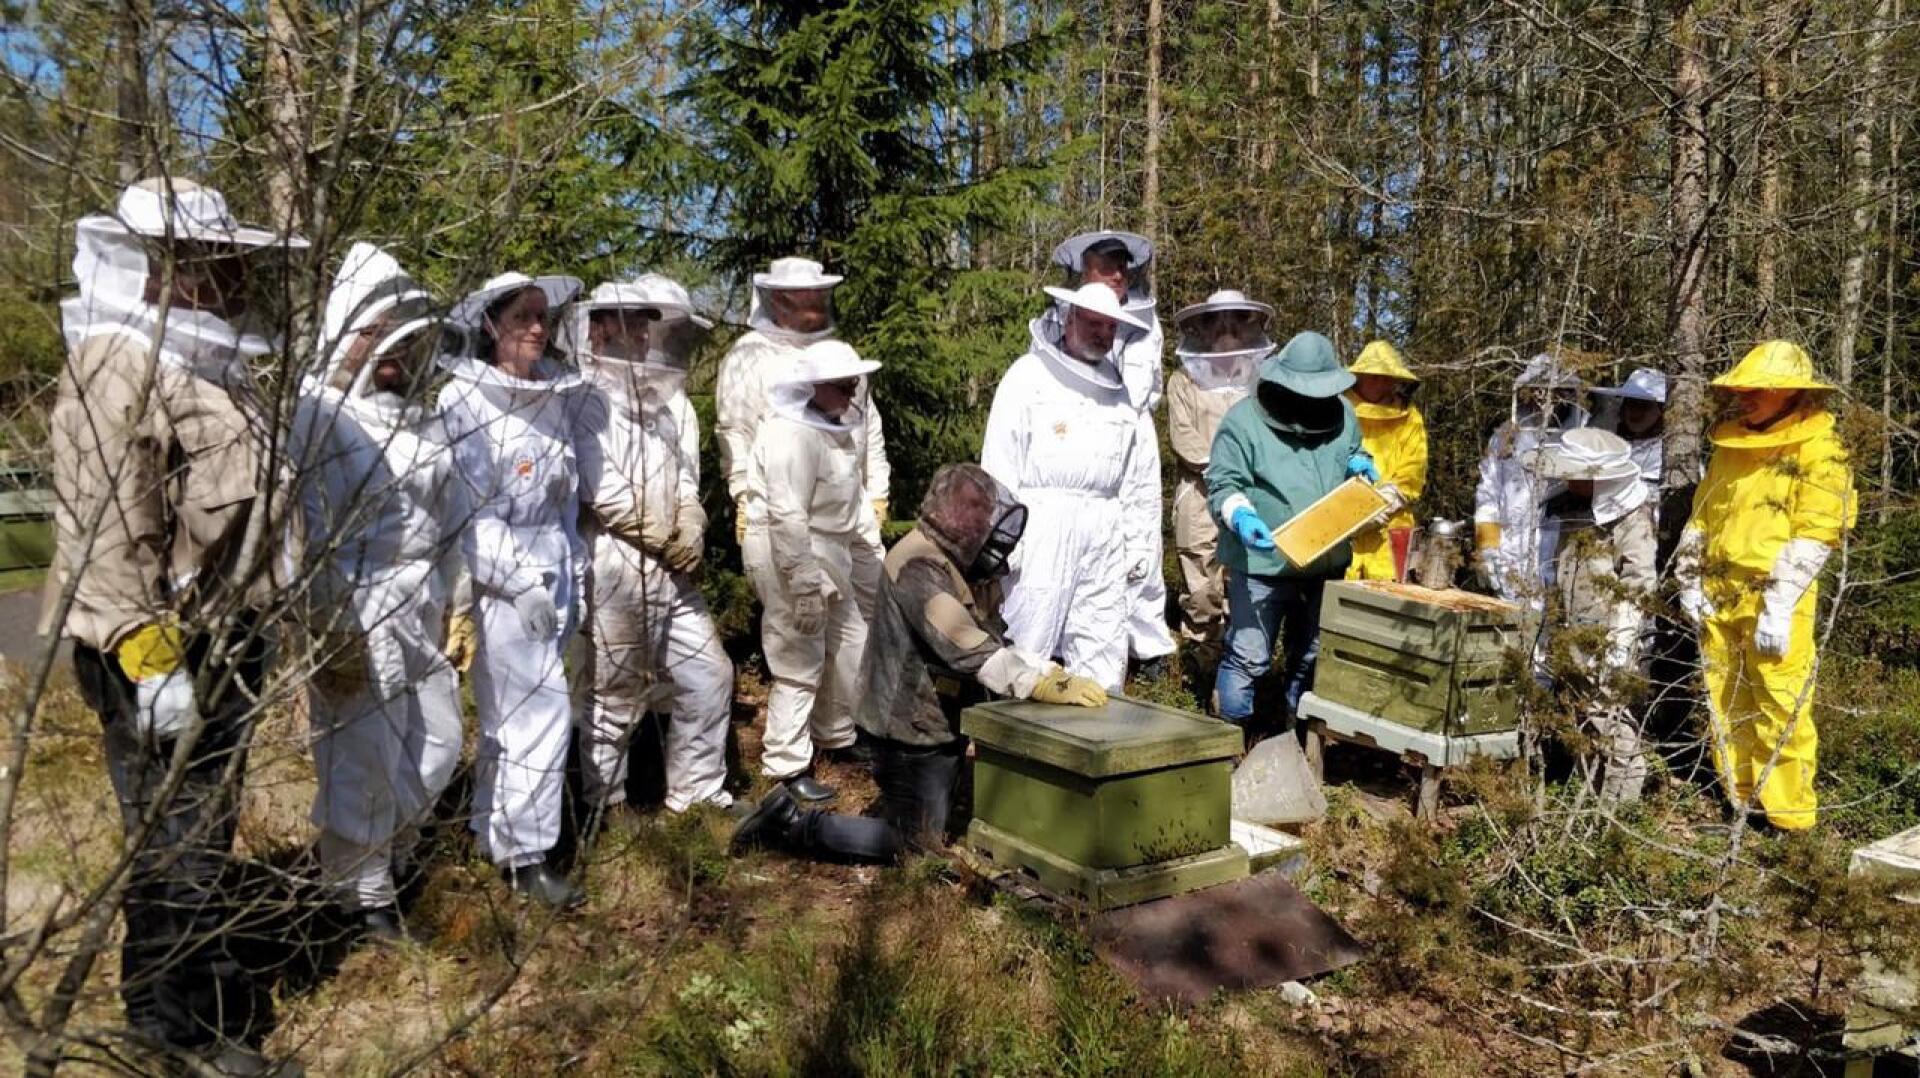 Mehiläishoitokurssilla Aappo Valo ja Timo Marjusaari opastivat pariakymmentä aiheesta kiinnostunutta kurssilaista.